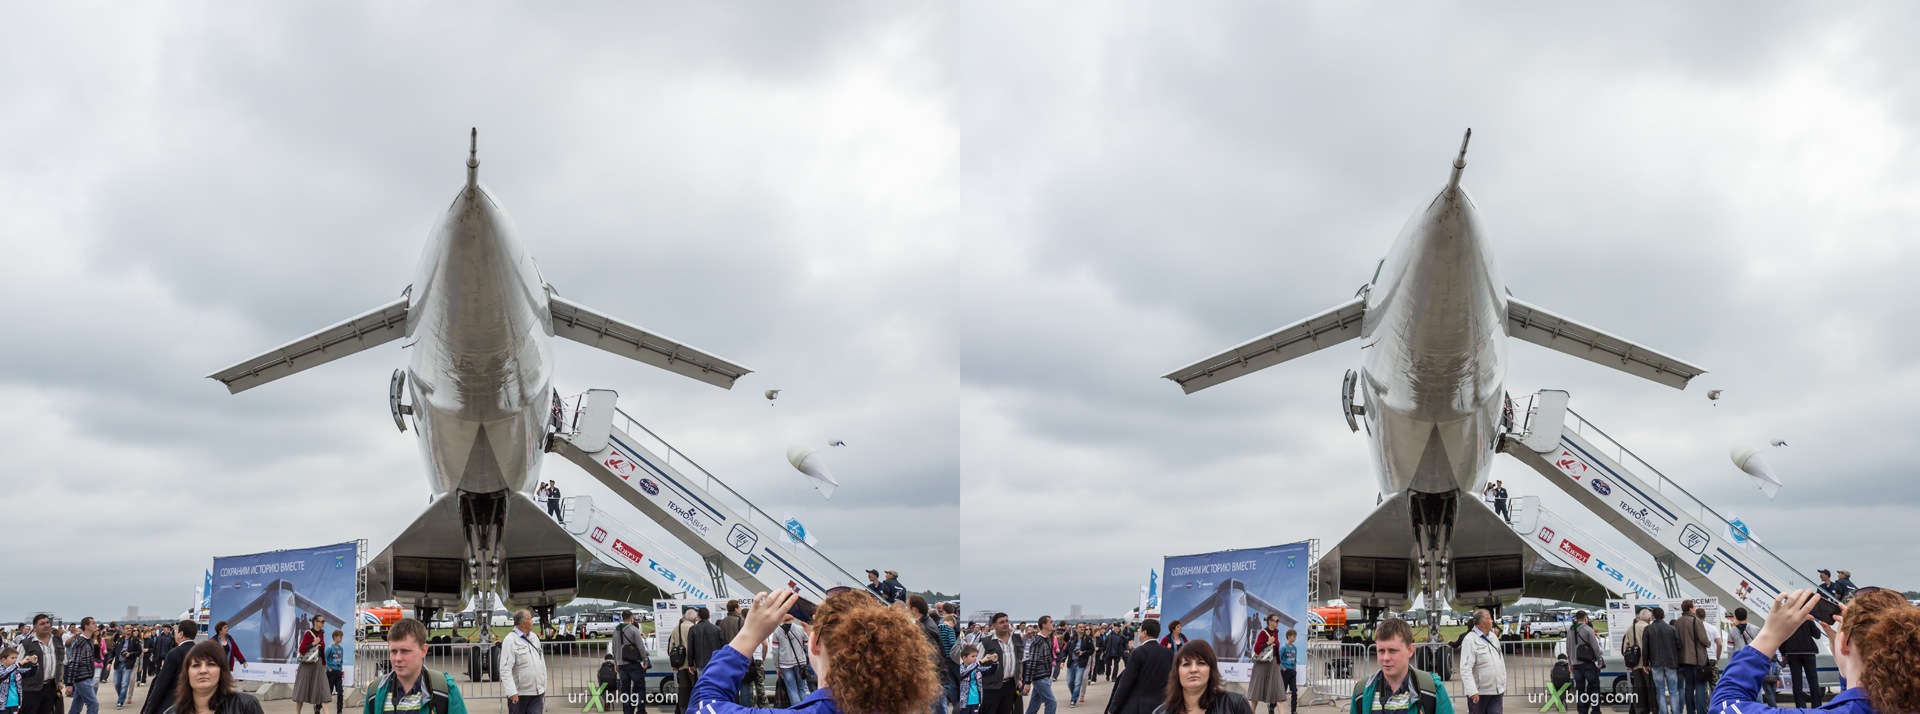 2013, Ту-144, Россия, Раменское, Жуковский, аэродром, самолёт, МАКС, Международный Авиационно-космический Салон, 3D, перекрёстная стереопара, стерео, стереопара